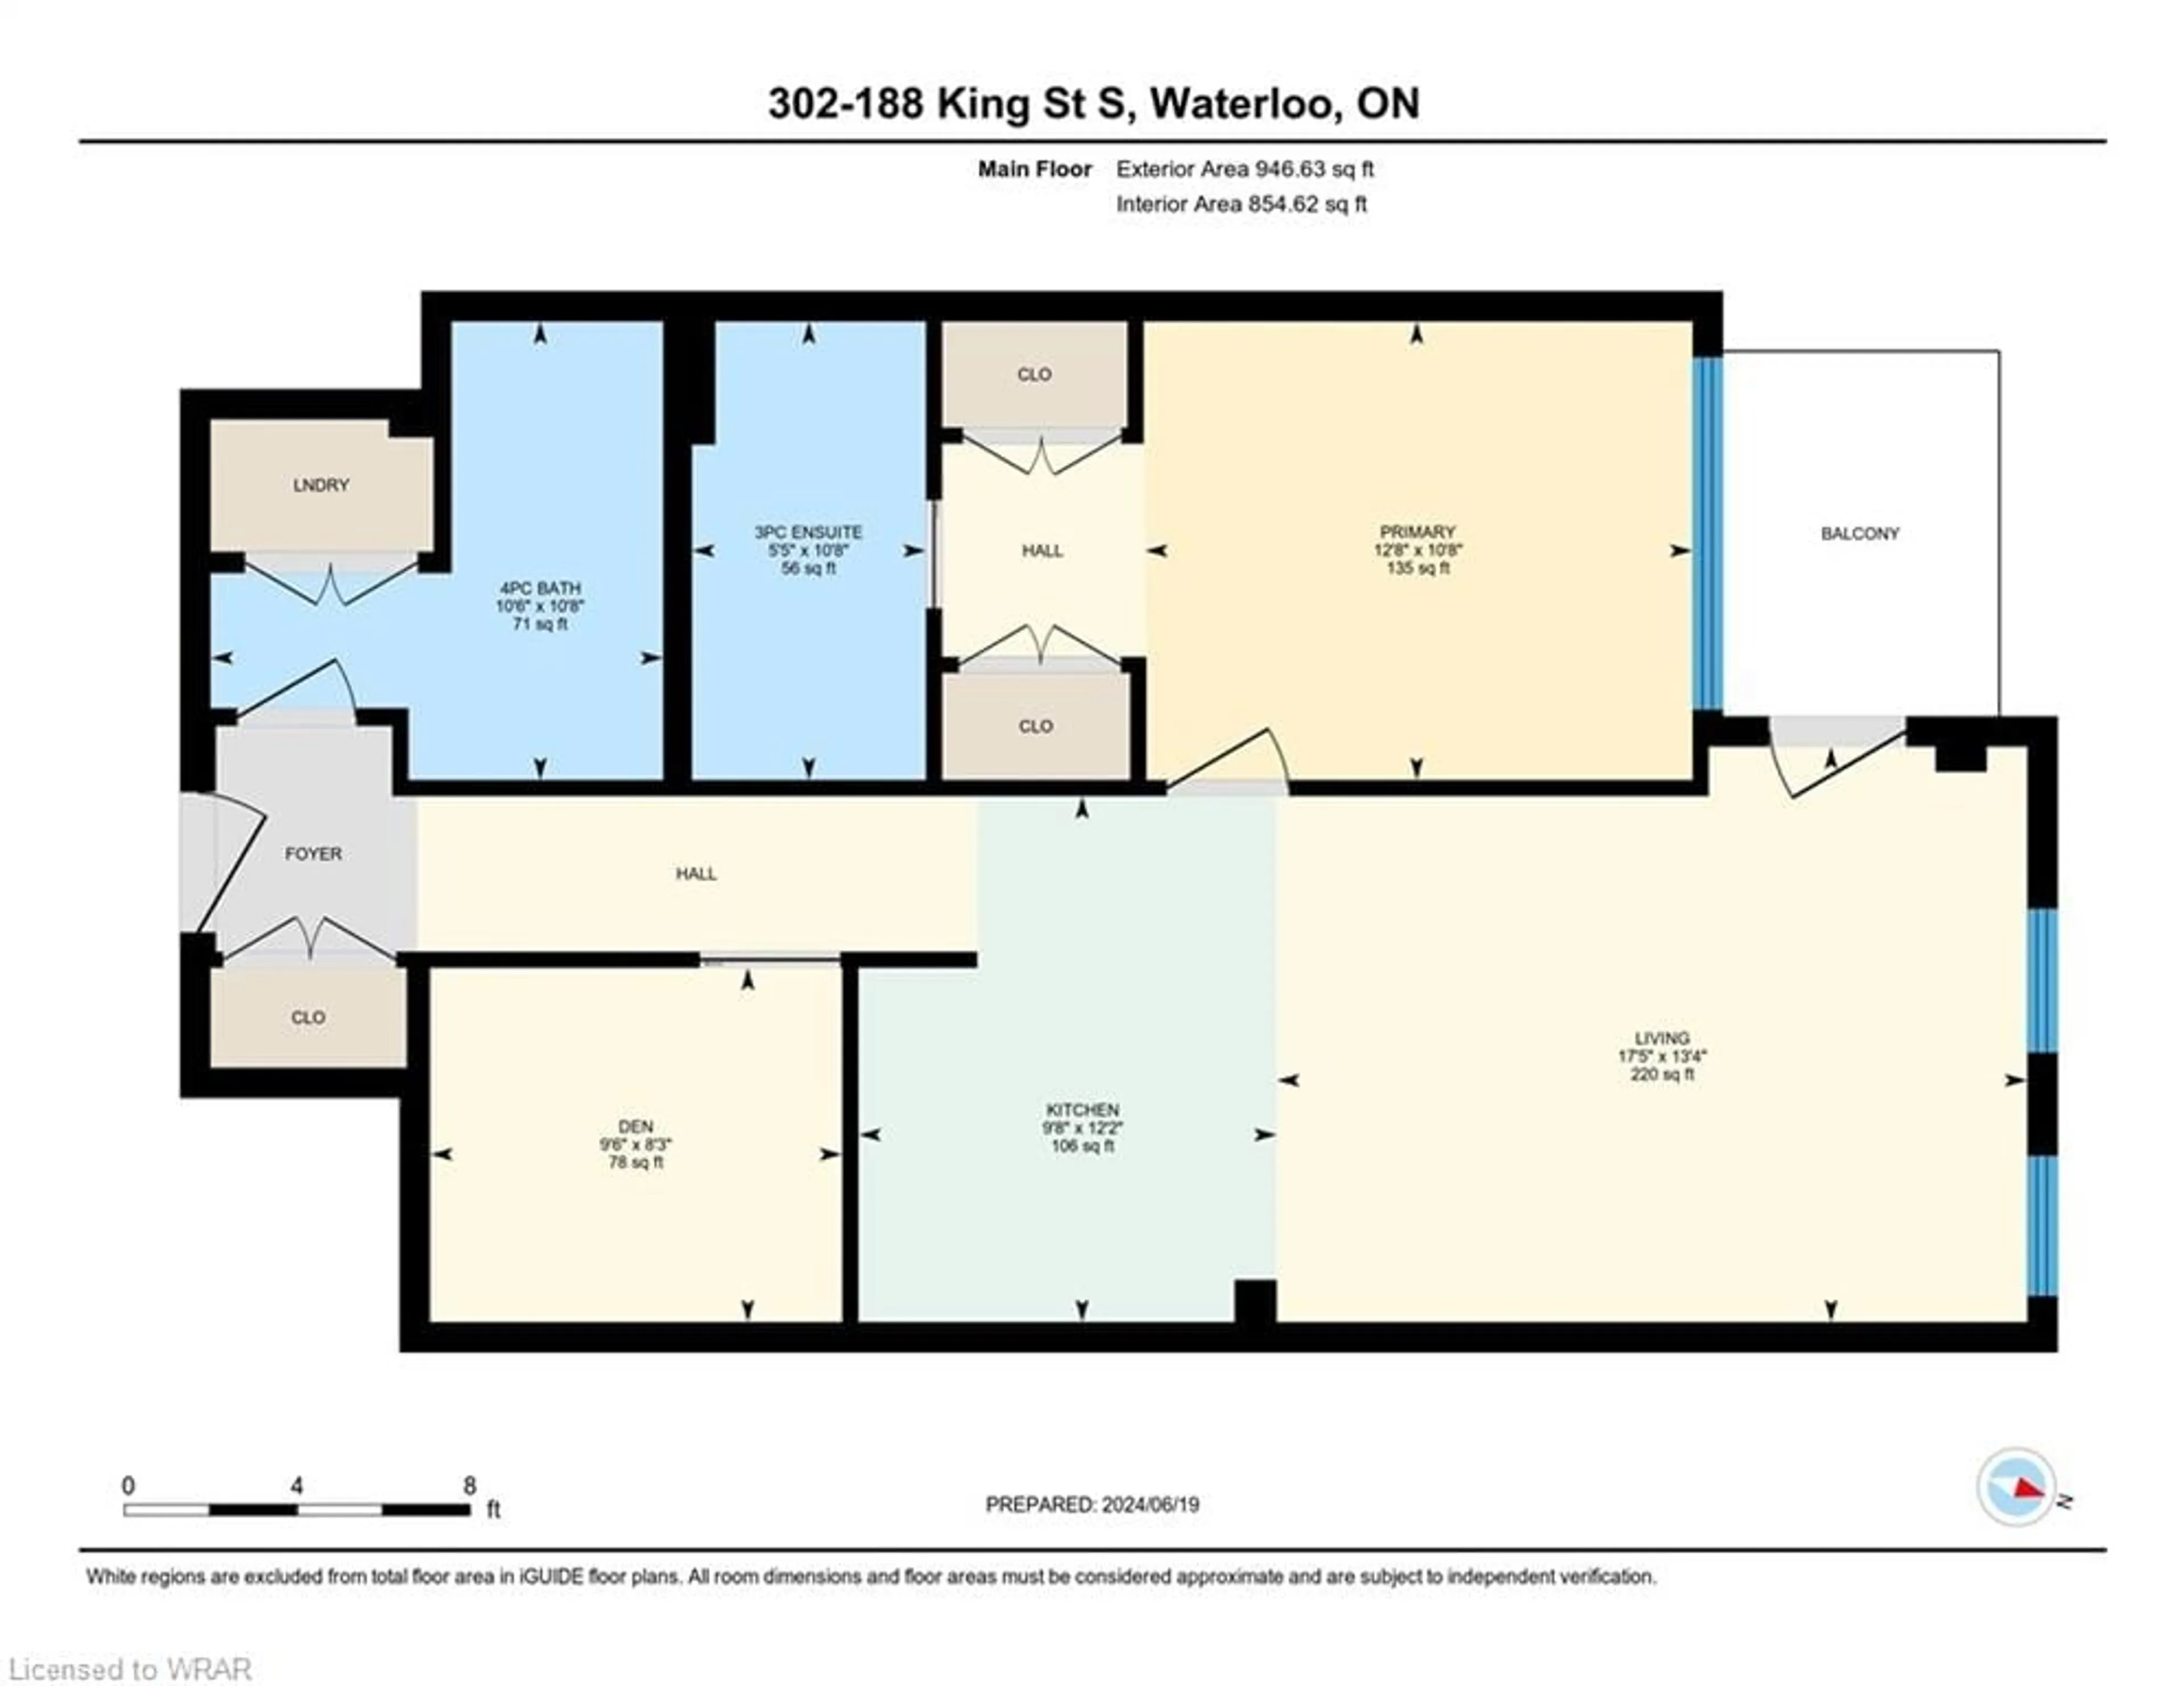 Floor plan for 188 King St #302, Waterloo Ontario N2J 0C6